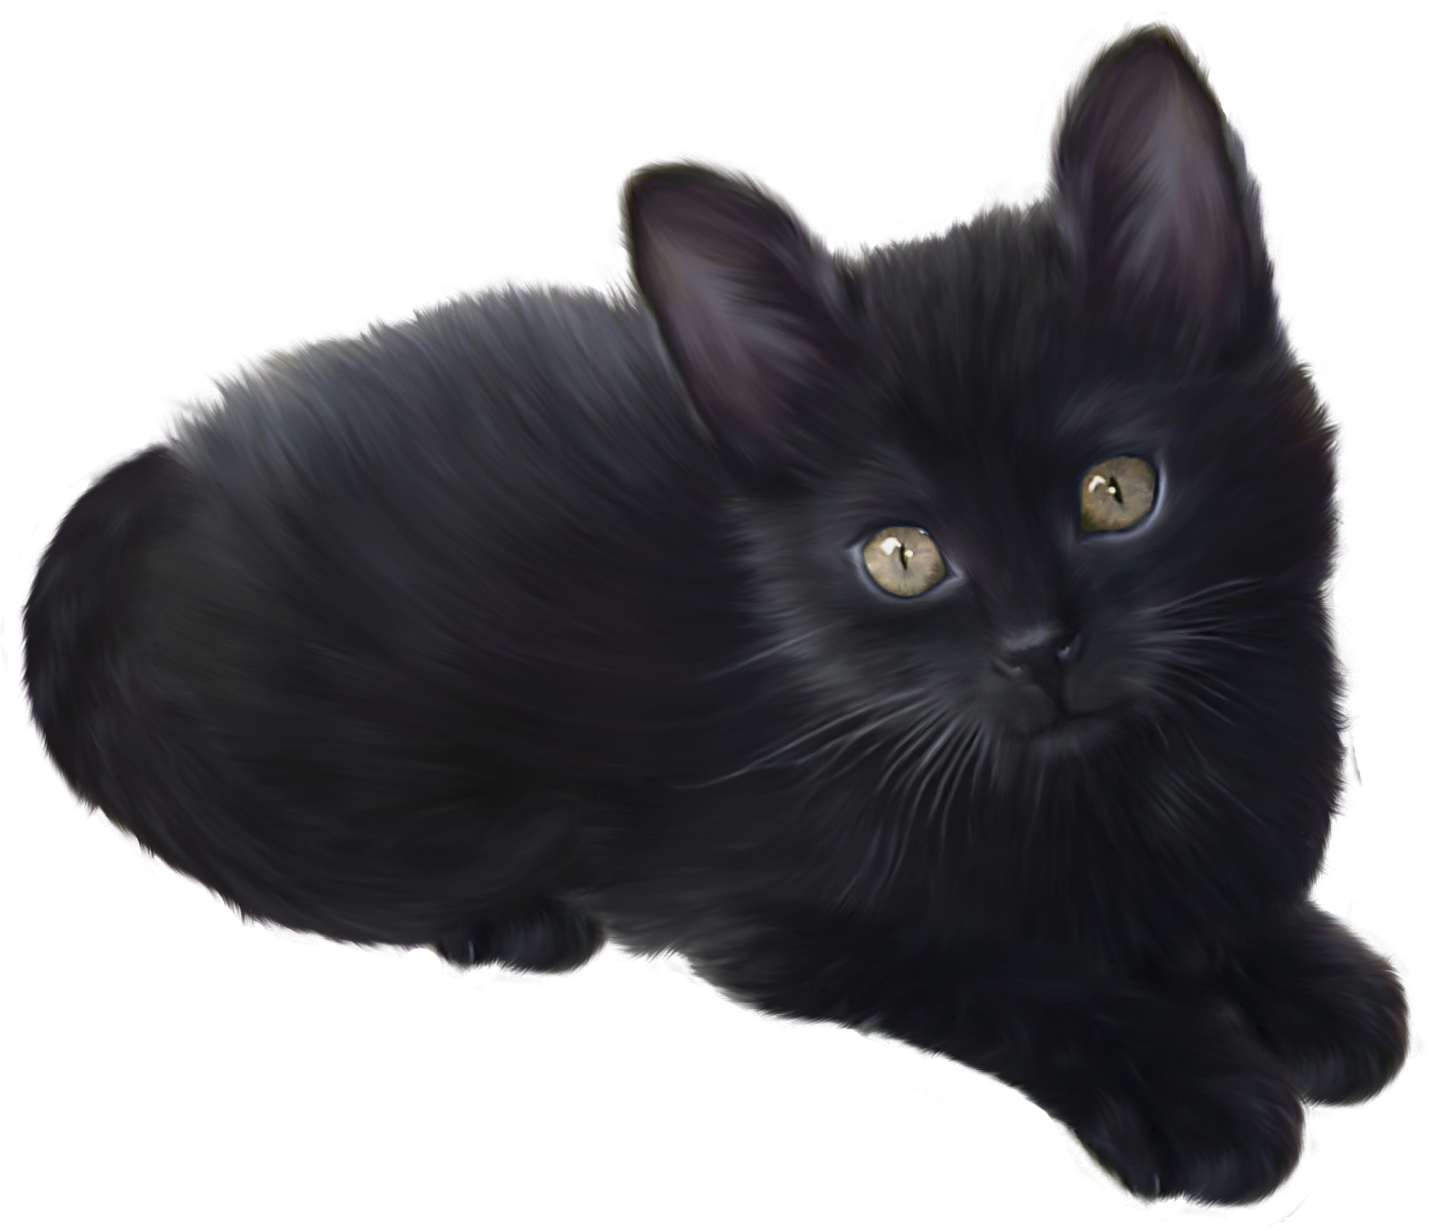 Imagen Transparente de gatito negro